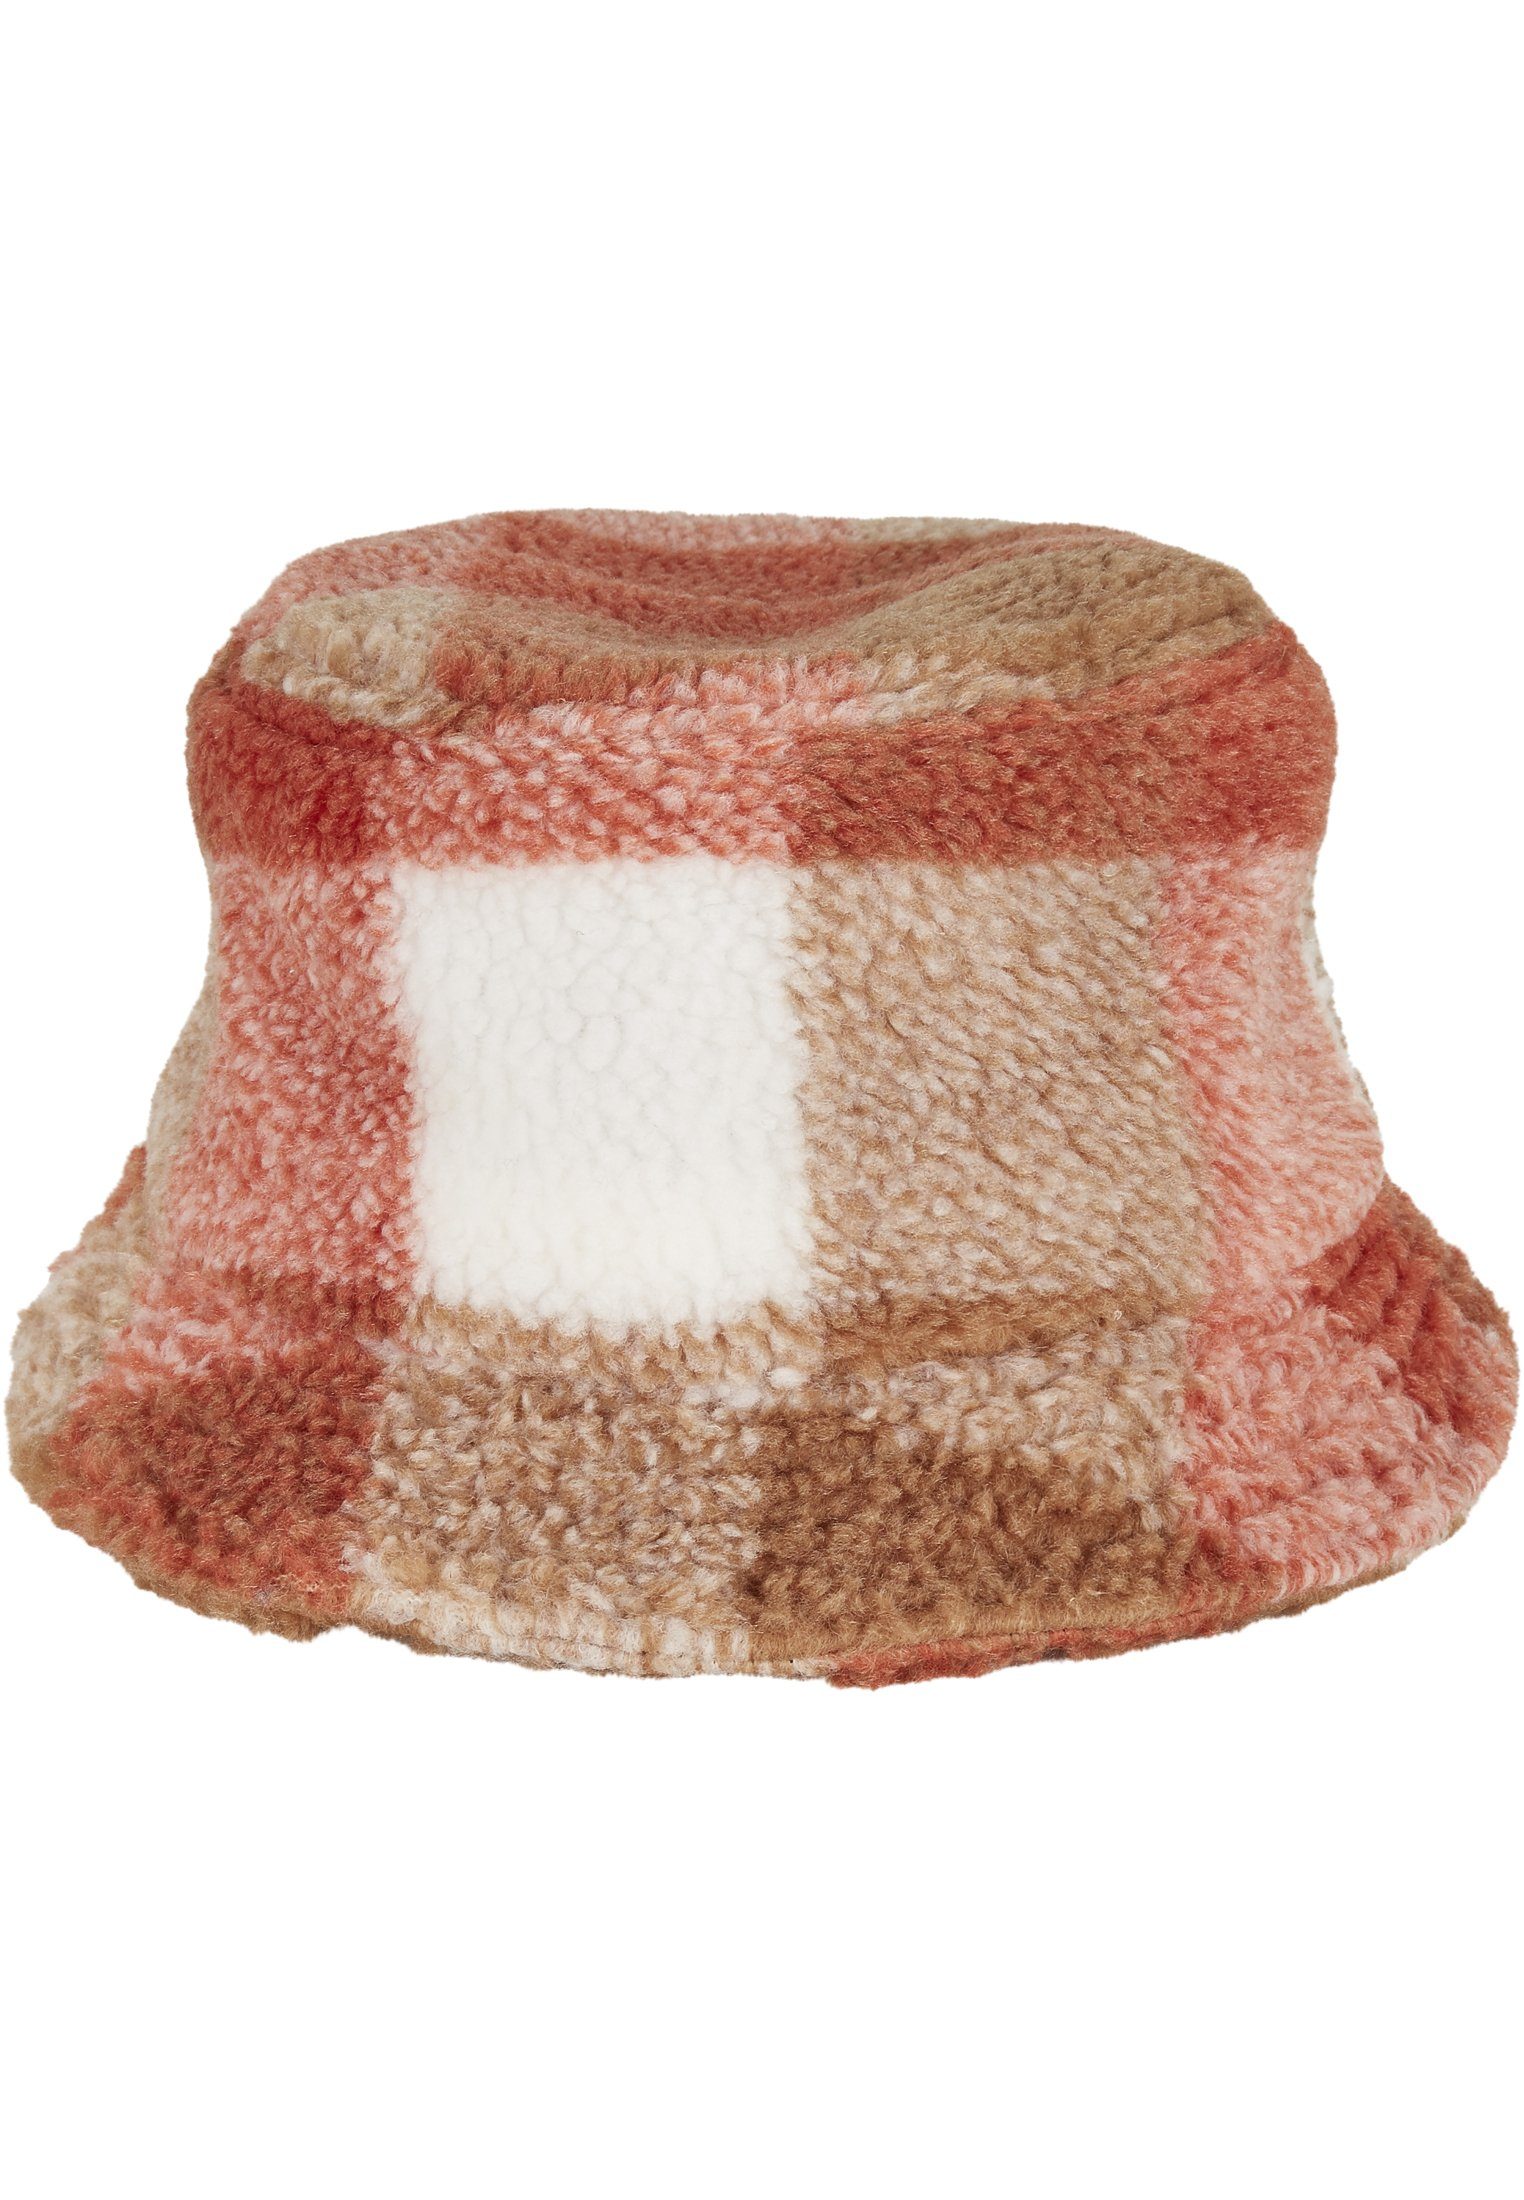 Cap Hat Flex Bucket Flexfit Hat Check whitesand/toffee Sherpa Bucket